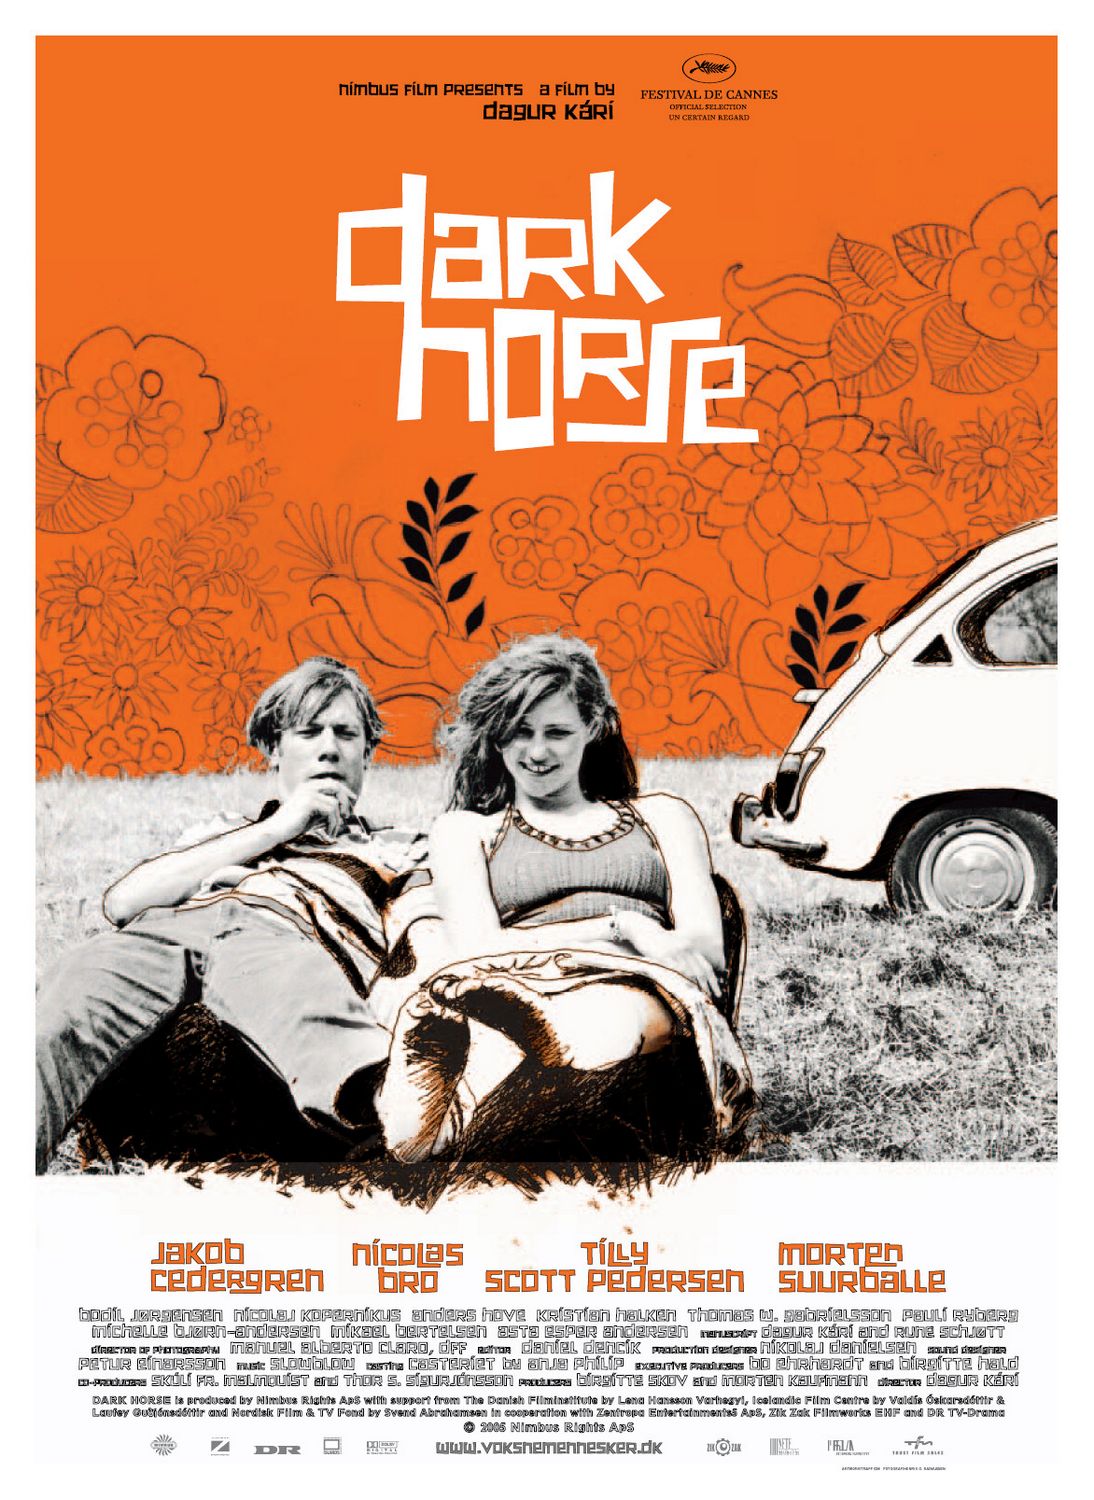 Extra Large Movie Poster Image for Voksne mennesker (#2 of 2)